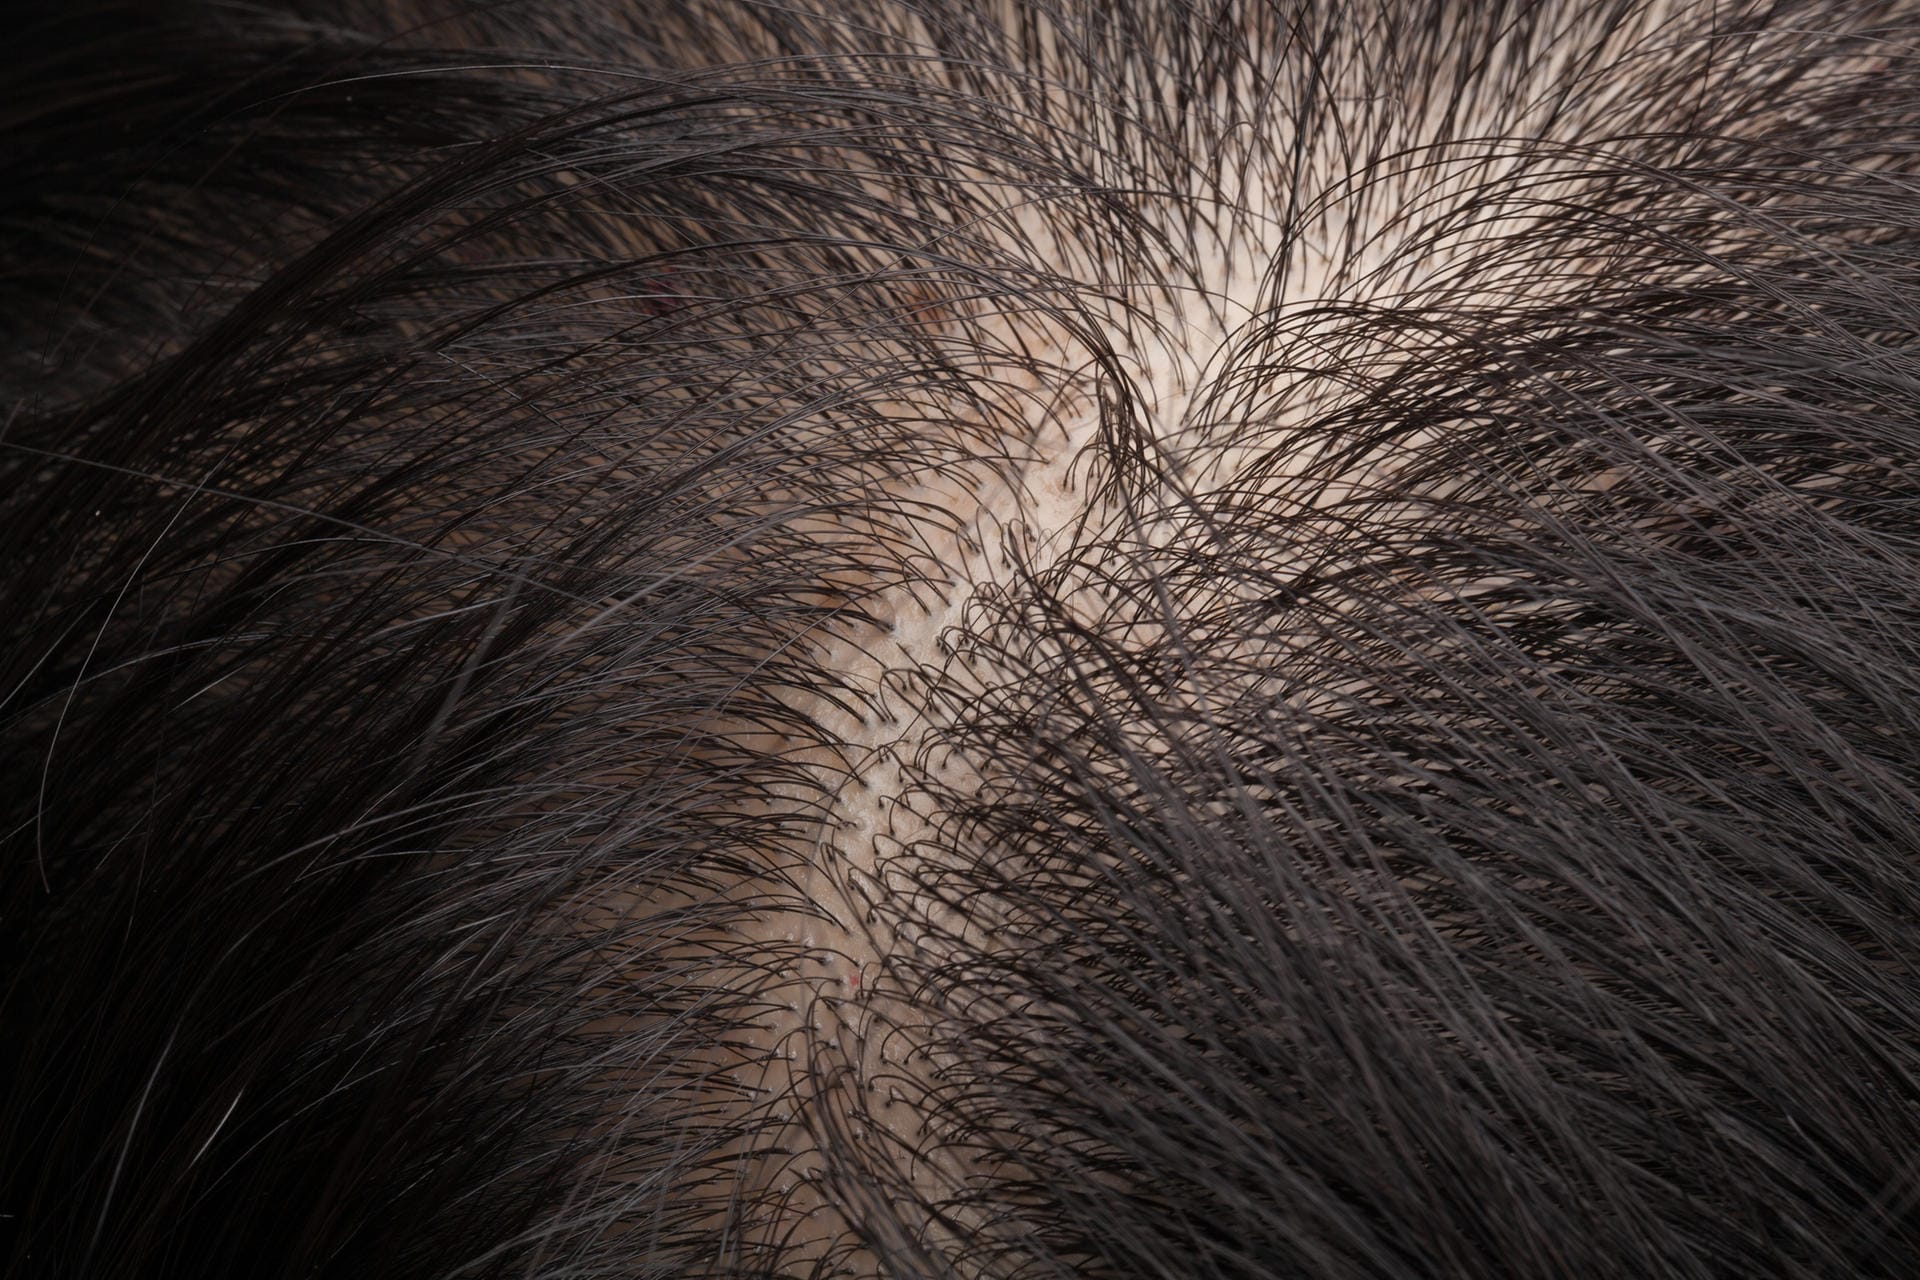 Bei dunklem Haar fallen kahle Stellen deutlich mehr auf, da die Kopfhaut viel heller durchscheint.